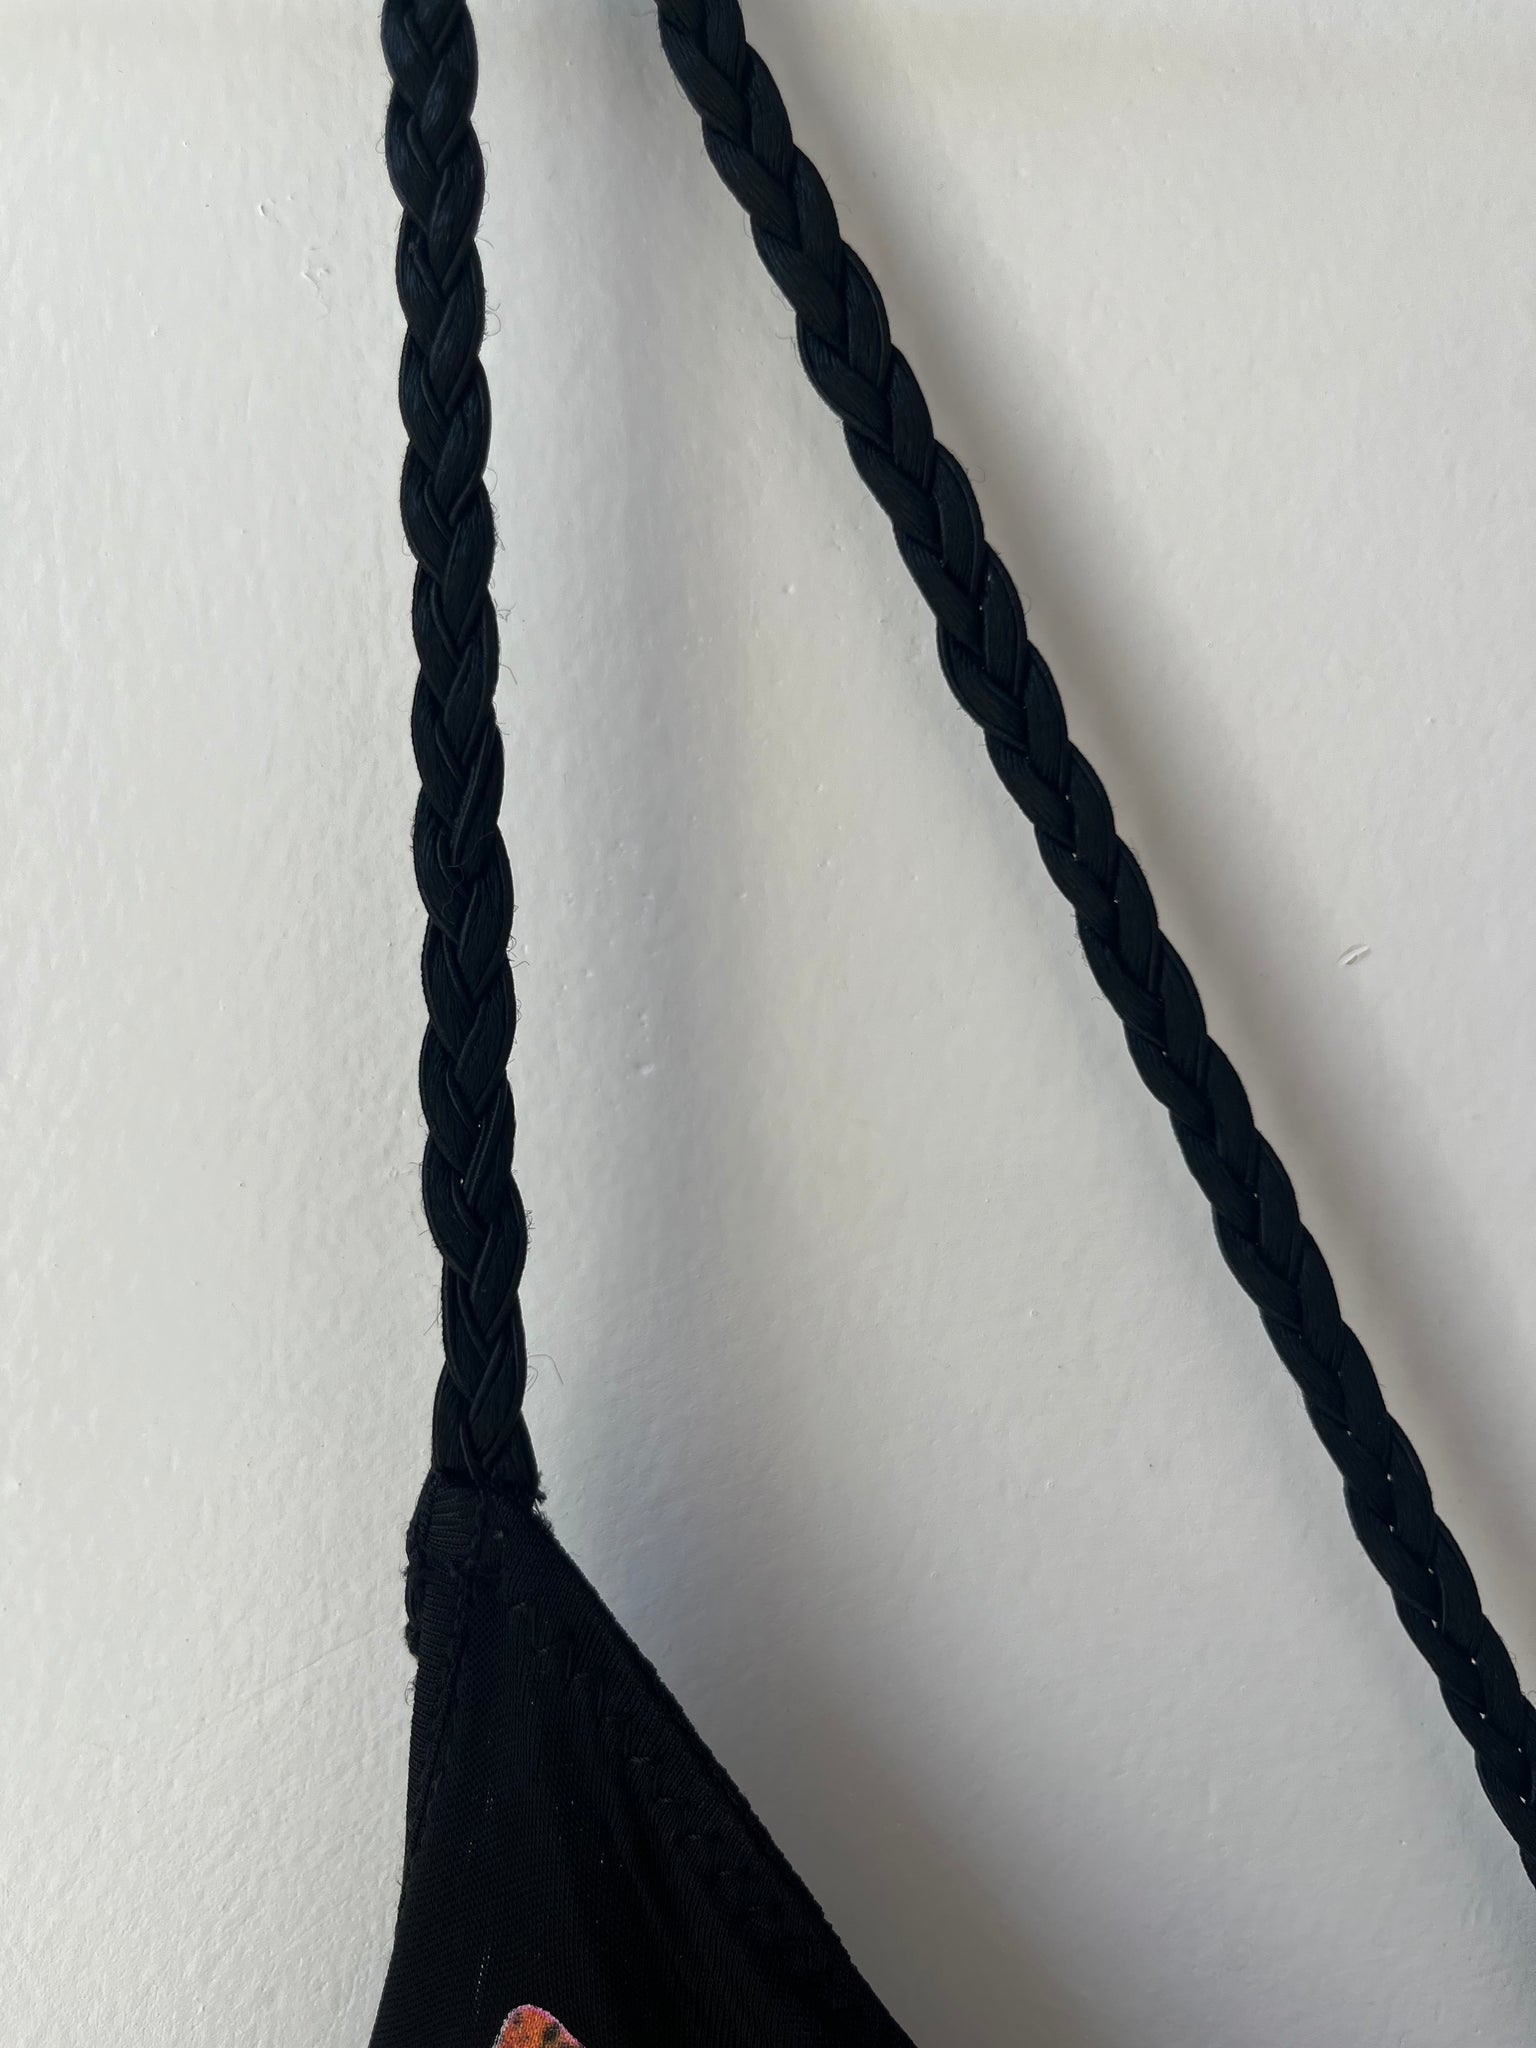 Cavalli black stretch knit dress